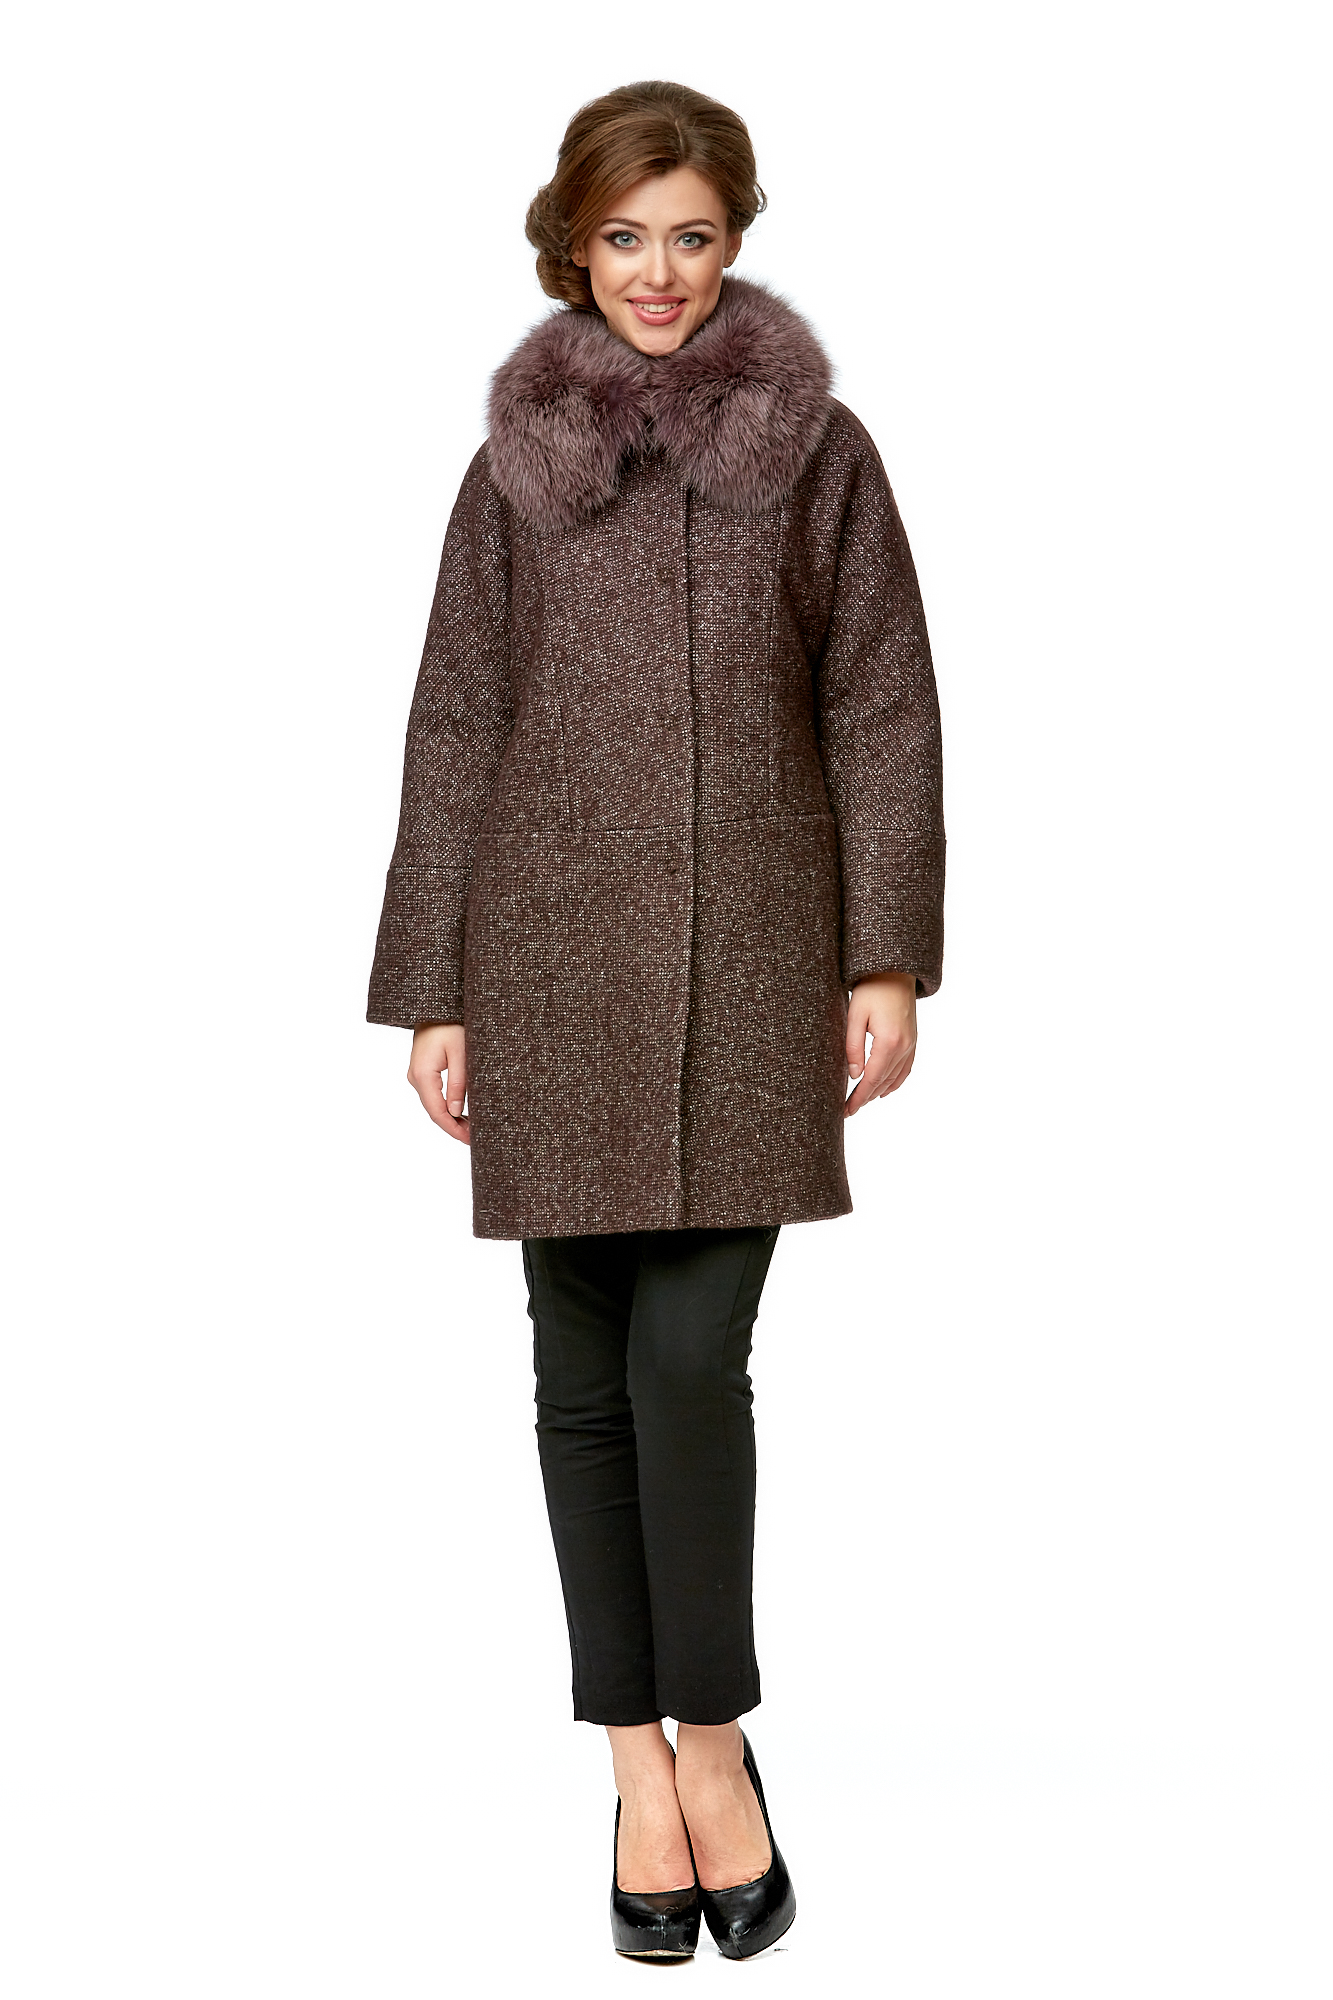 Пальто женское МОСМЕХА 8003162 коричневое 42 RU